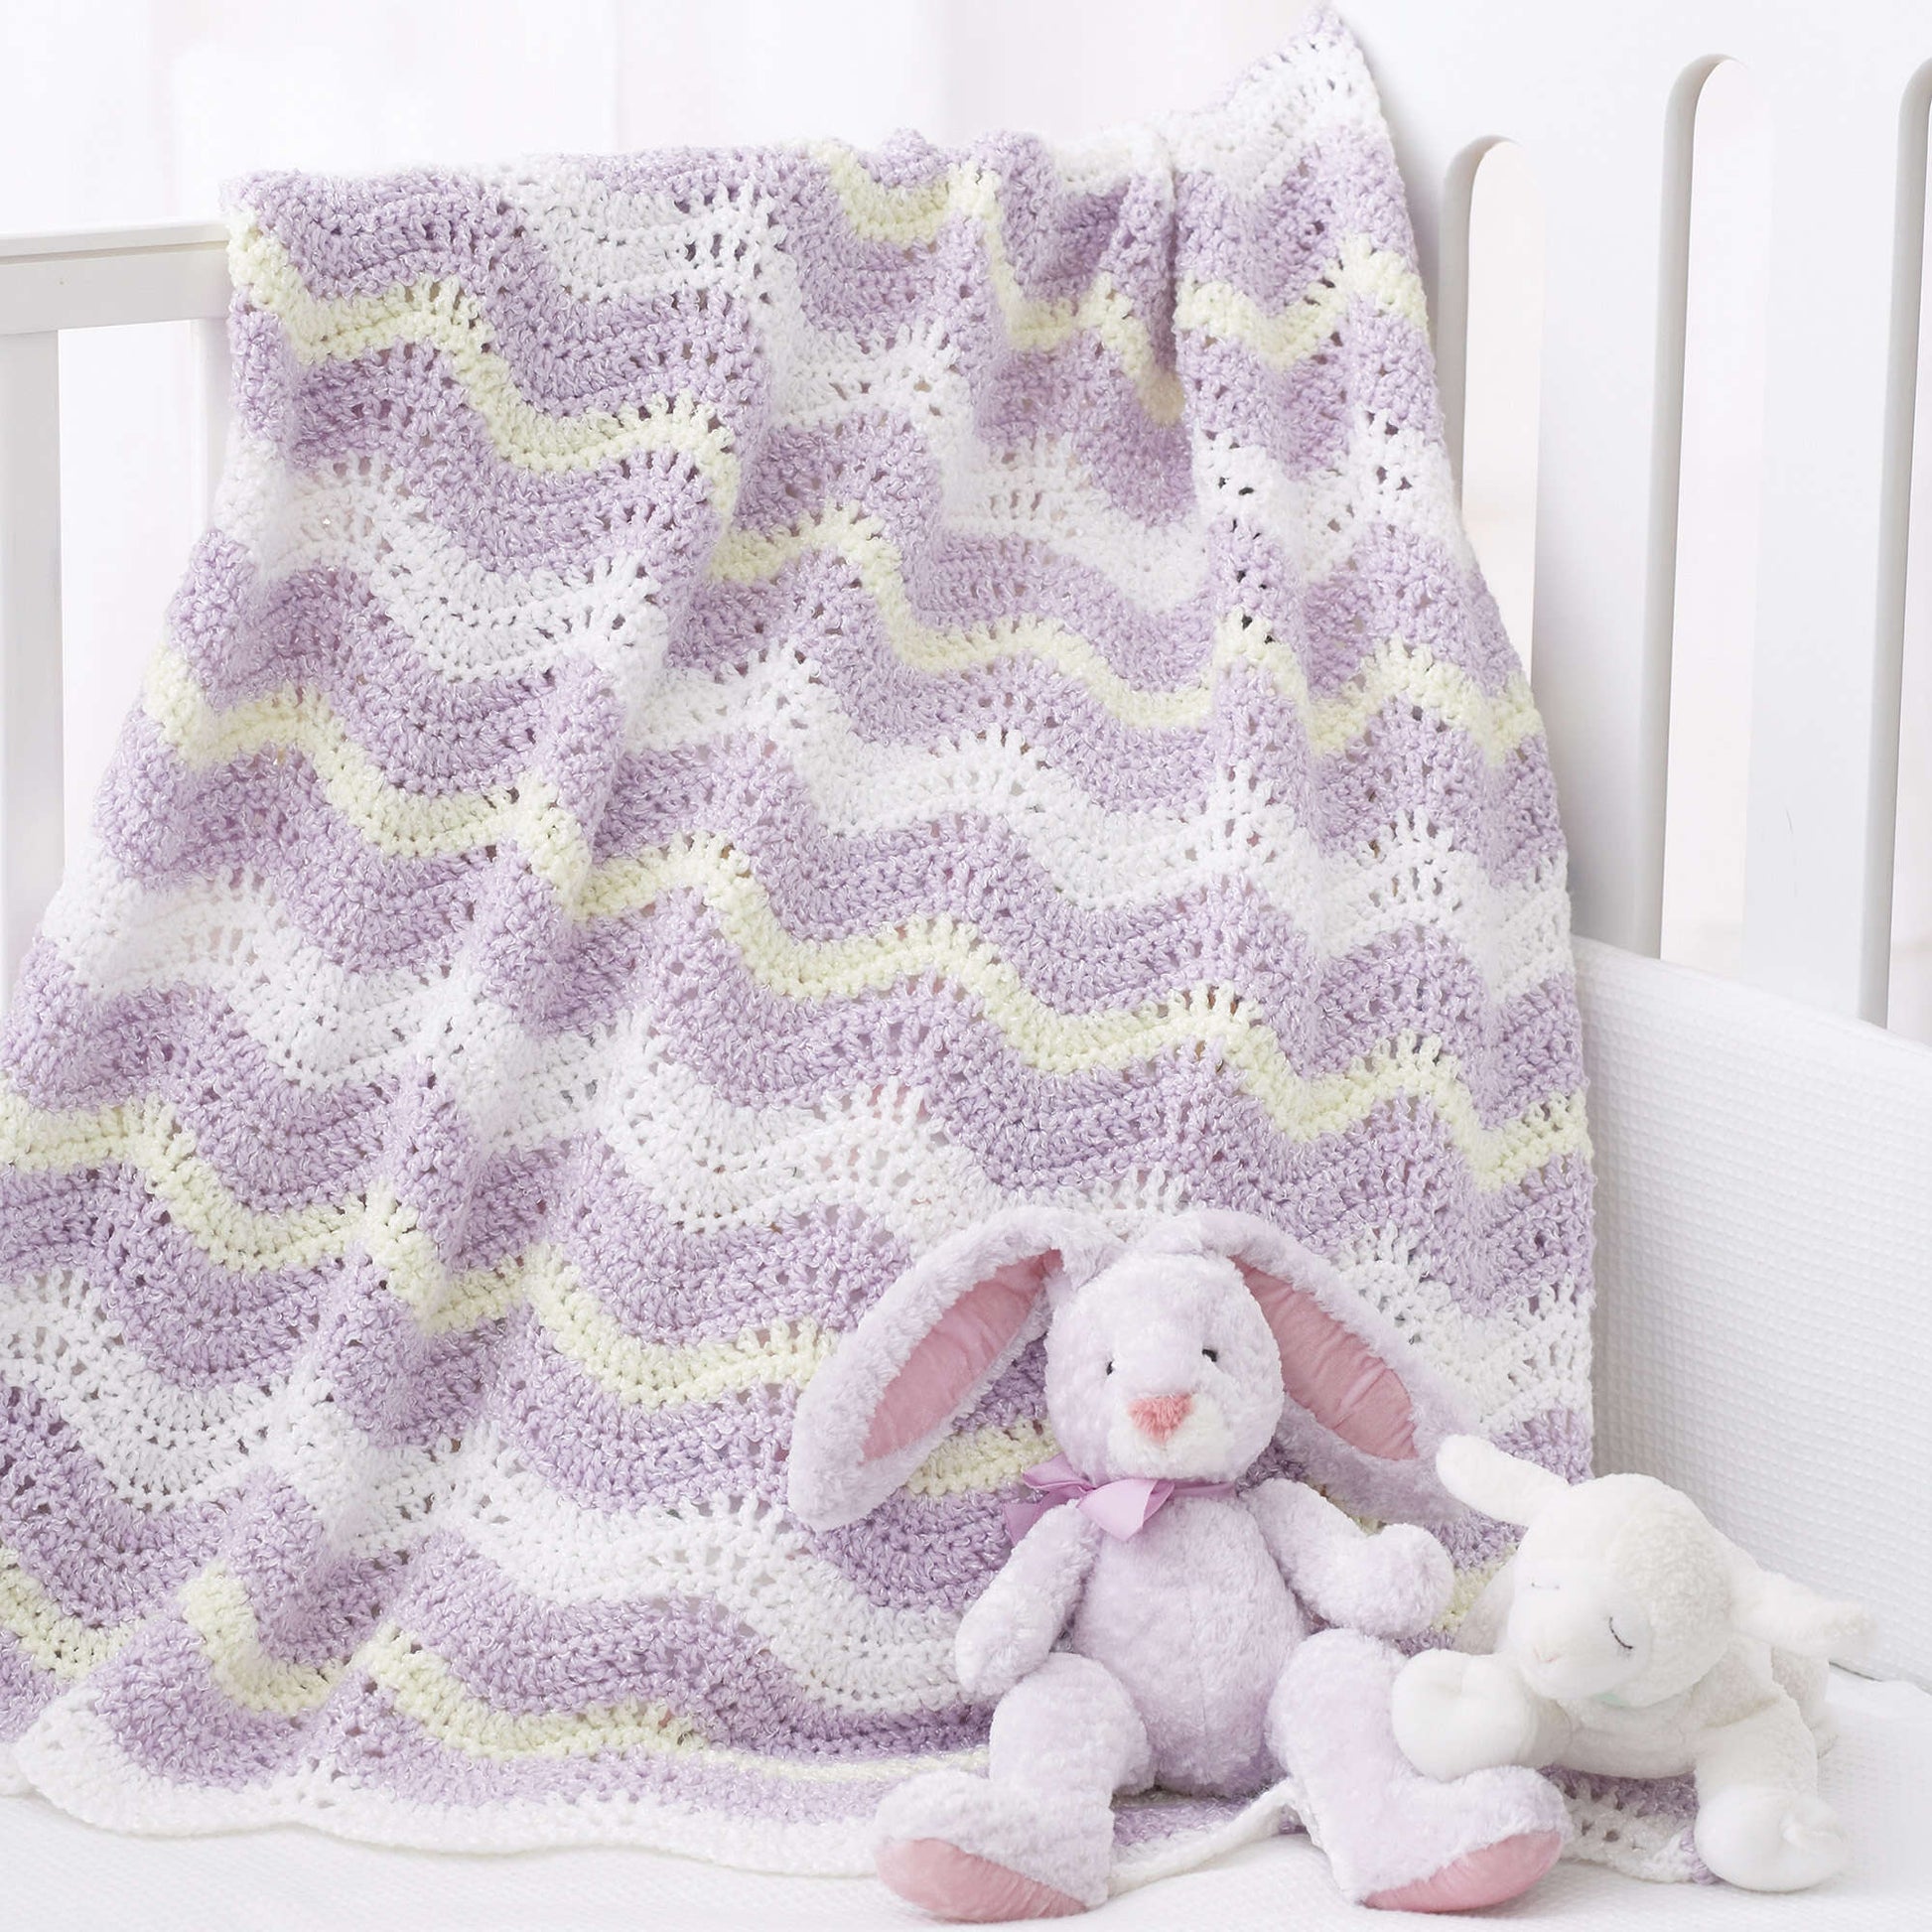 Free Bernat Wavy Ripple Crochet Blanket Pattern